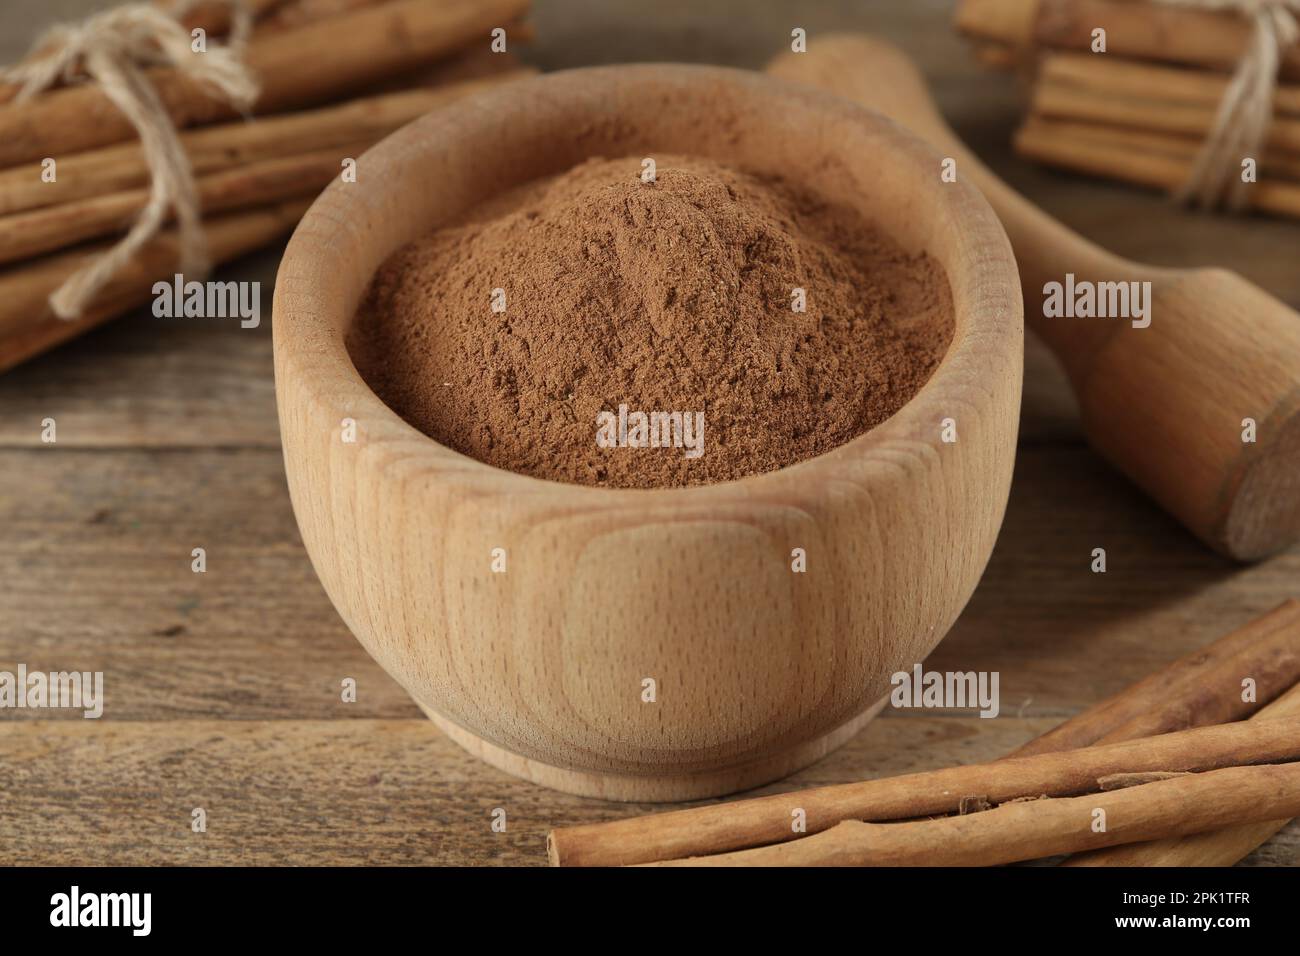 Cannella in polvere aromatica in mortaio, bastoncini e pestello su tavola di legno, primo piano Foto Stock